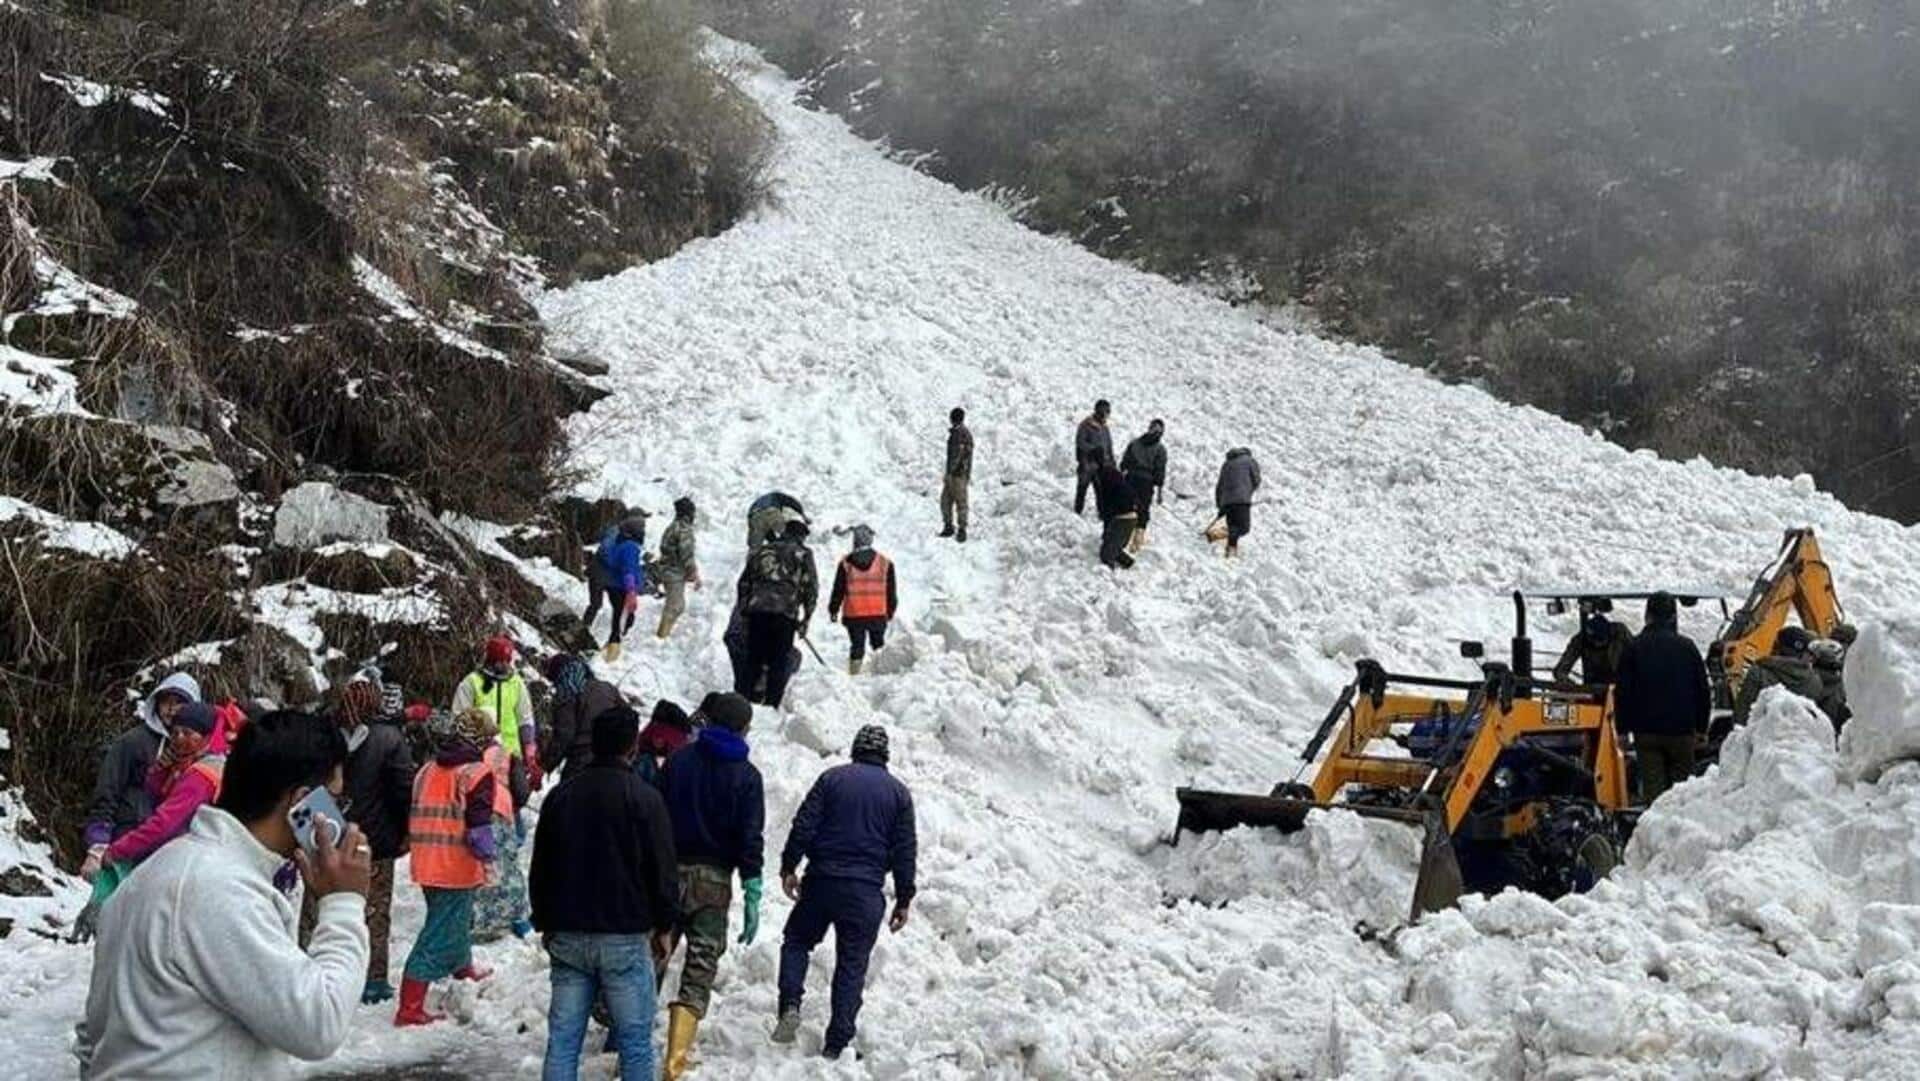 सिक्किम: नाथू ला में बड़े हिमस्खलन की चपेट में आकर 7 पर्यटकों की मौत, कई फंसे